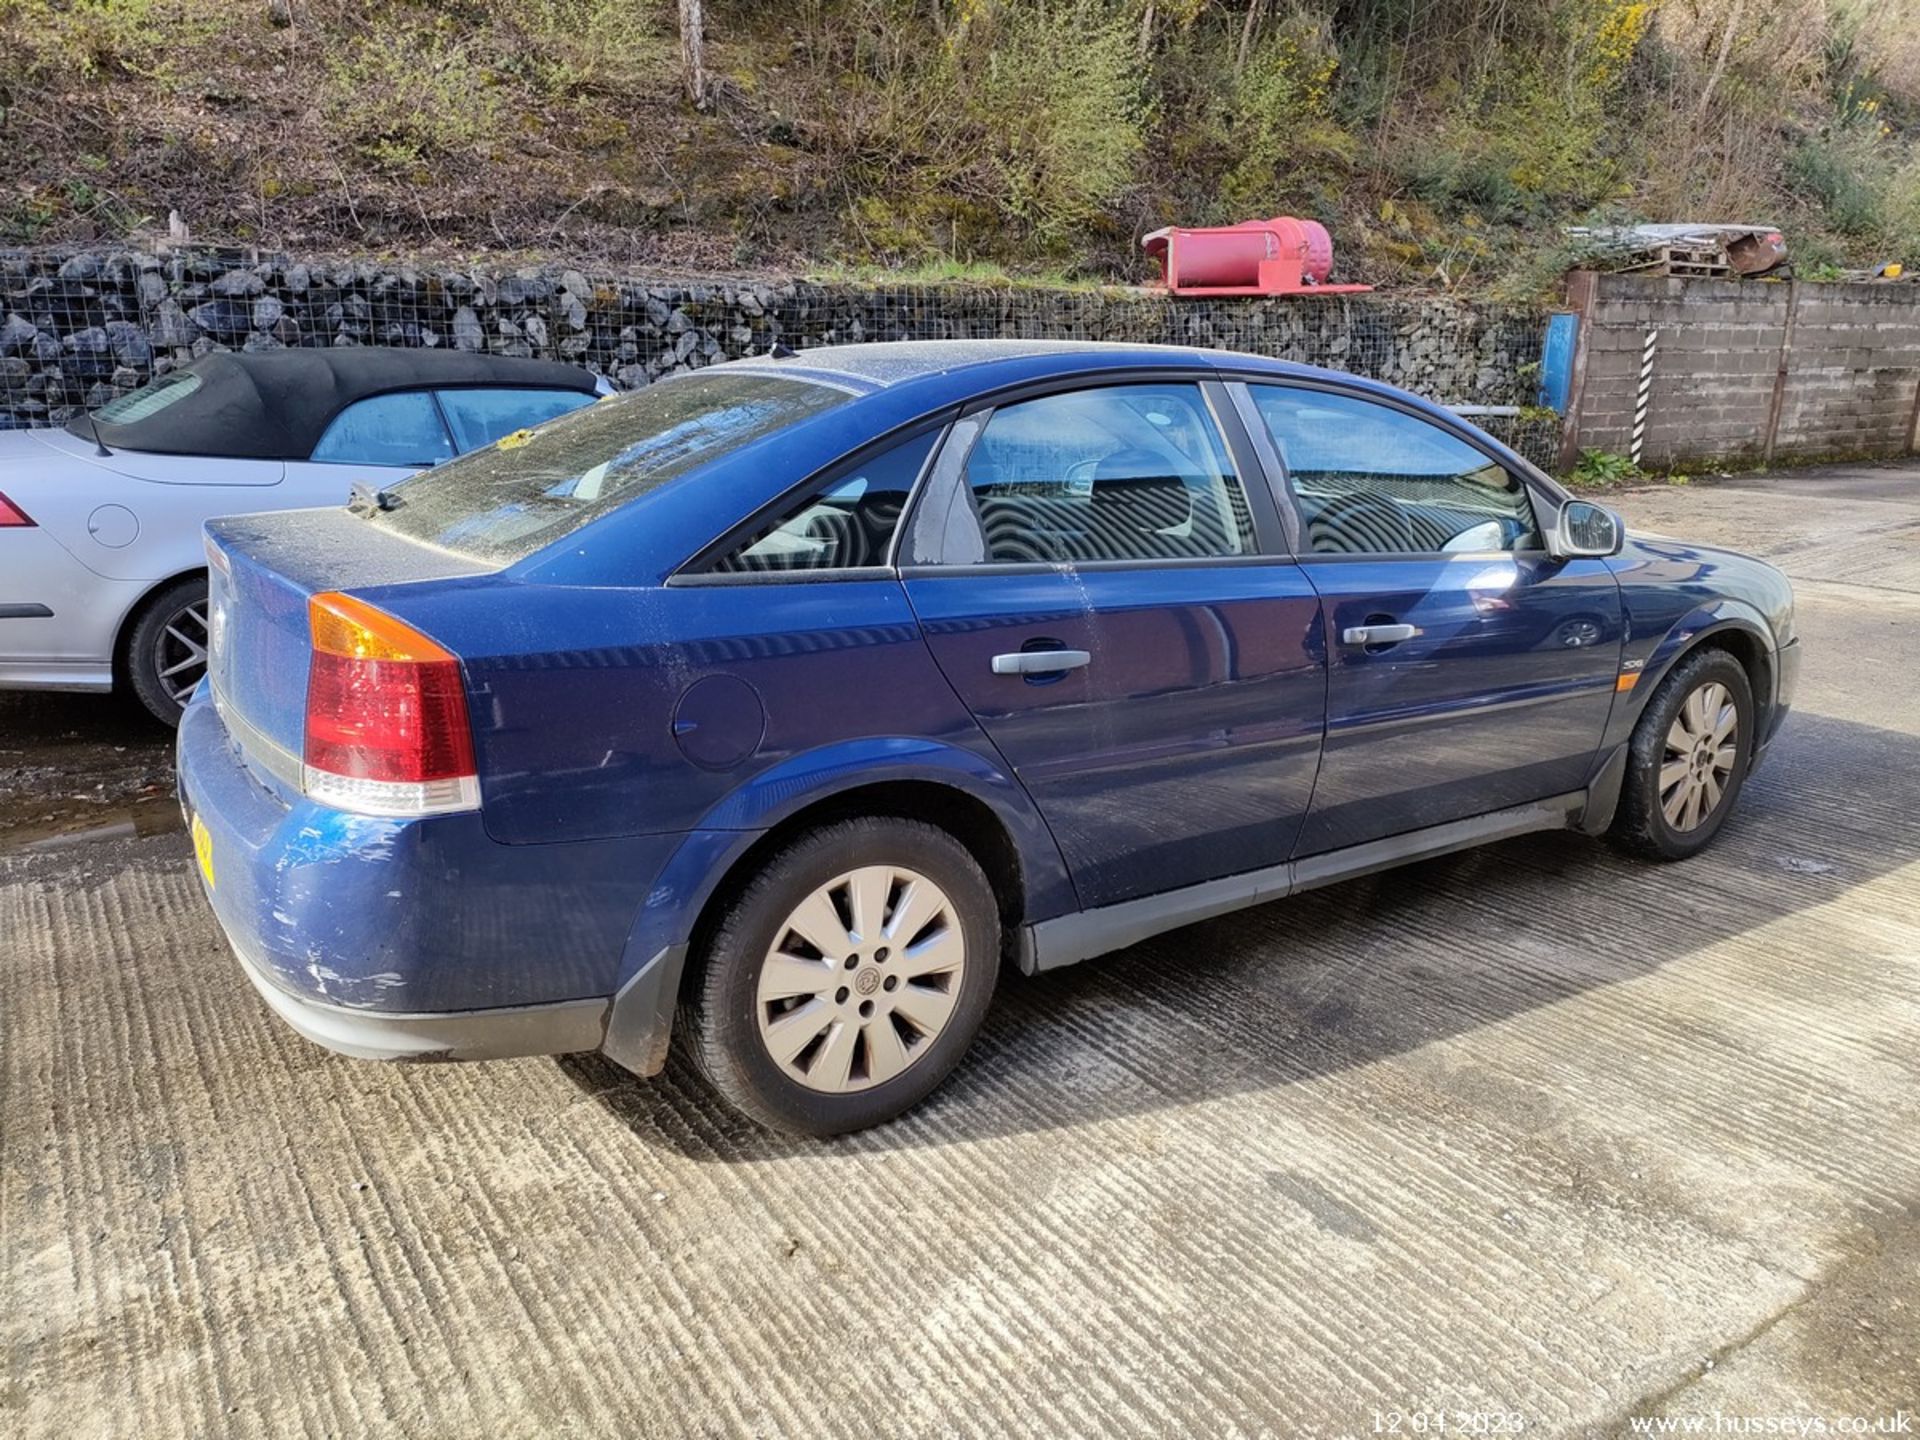 03/03 VAUXHALL VECTRA SXI 16V - 1796cc 5dr Hatchback (Blue) - Image 27 of 40